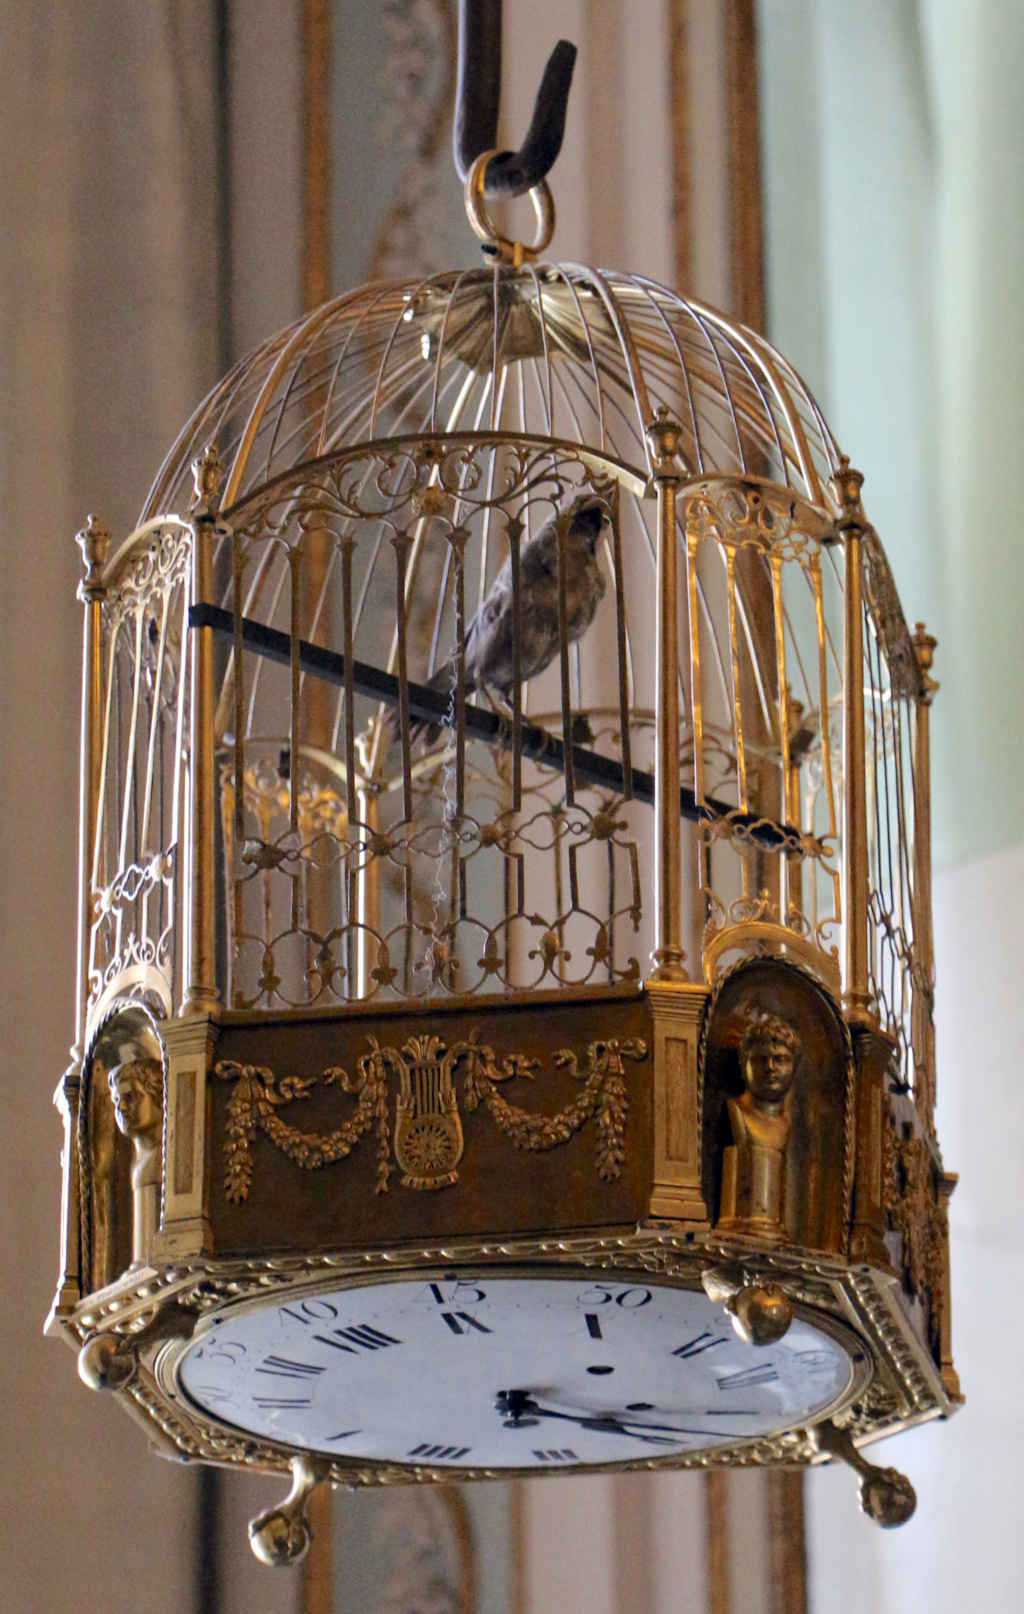 Les pendules cages et oiseaux automates du XVIIIe siècle - Page 2 Reggia10